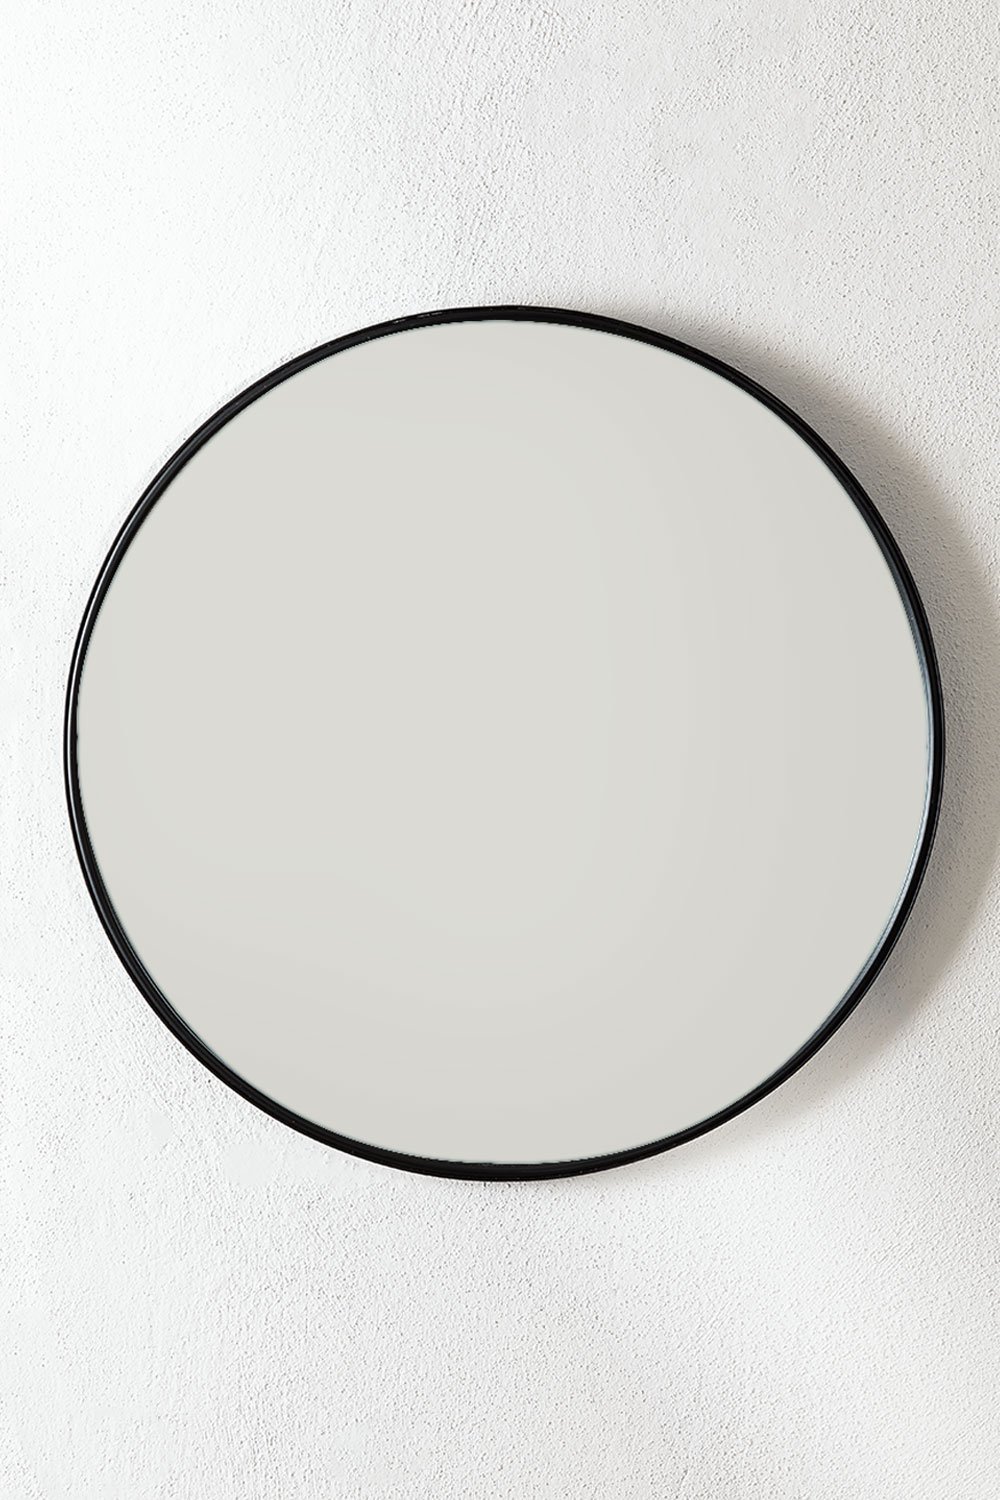 Specchio da parete da bagno rotondo in metallo (Ø50 cm) Alnie, immagine della galleria 1